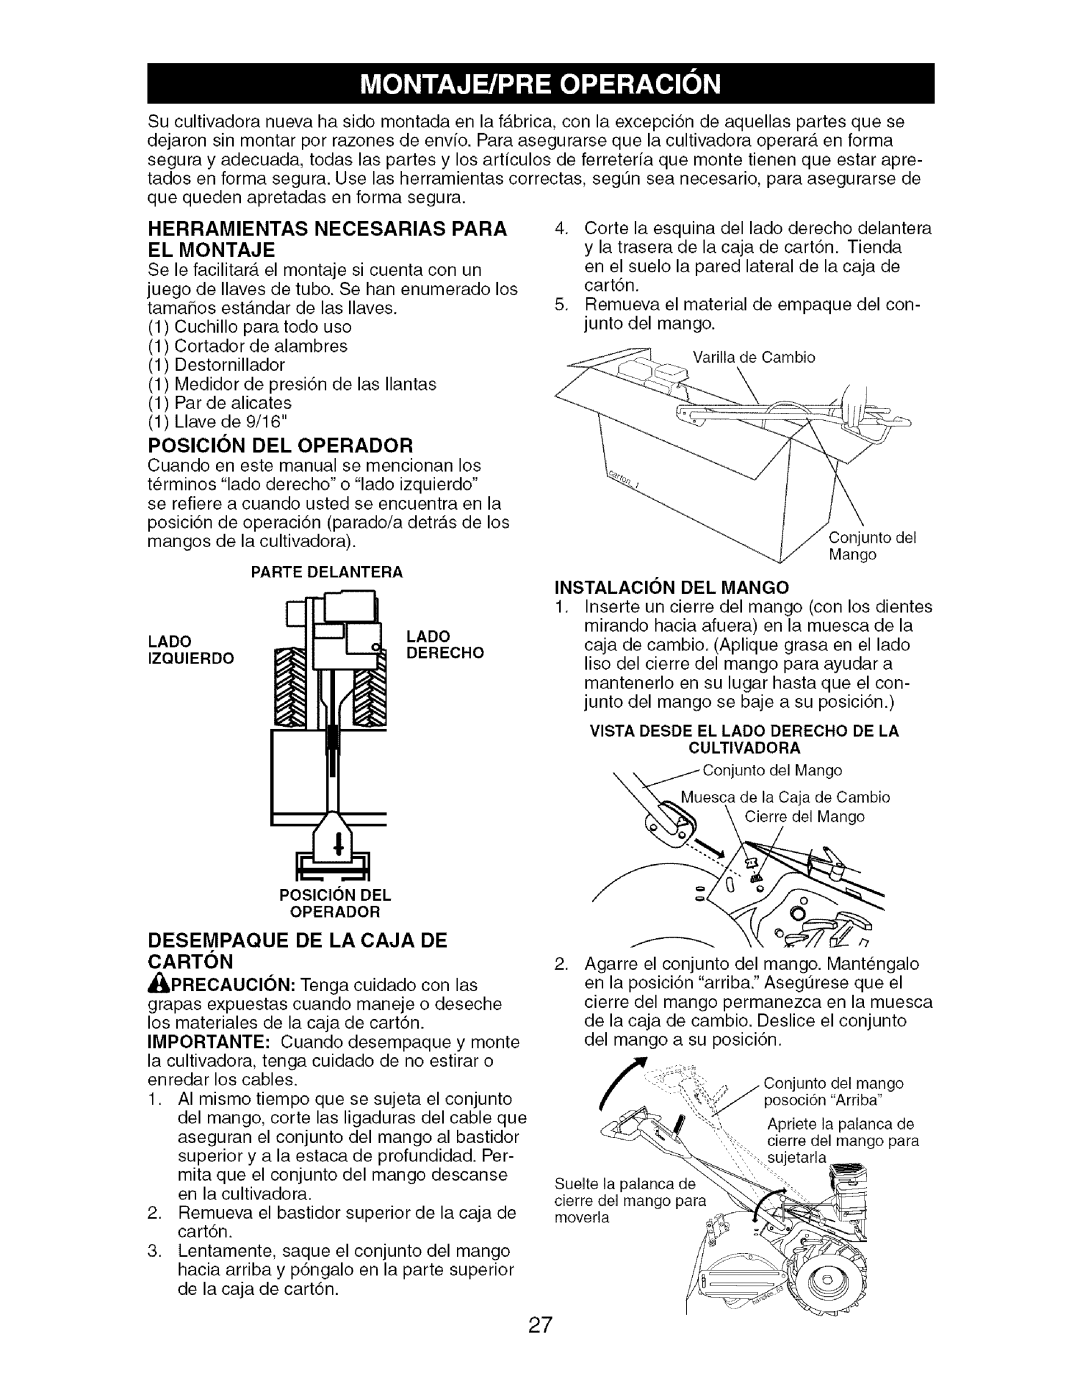 Craftsman 917.29604 Herramientas Necesarias Para El Montaje, Posicion Del Operador, Desempaque De La Caja De Carton 